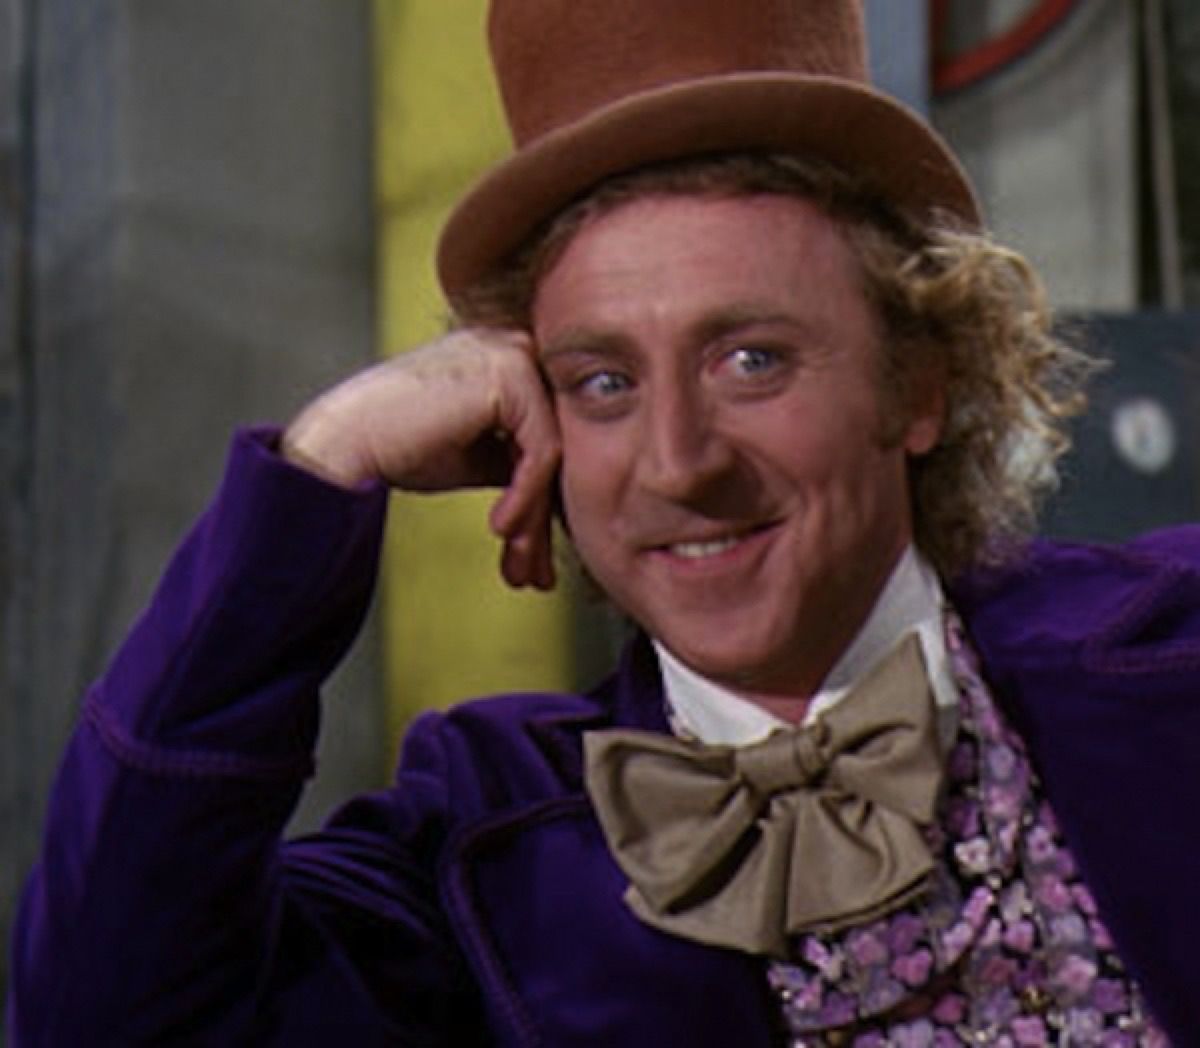 Gene Wilder con sombrero de copa, pajarita y esmoquin morado como Willy Wonka